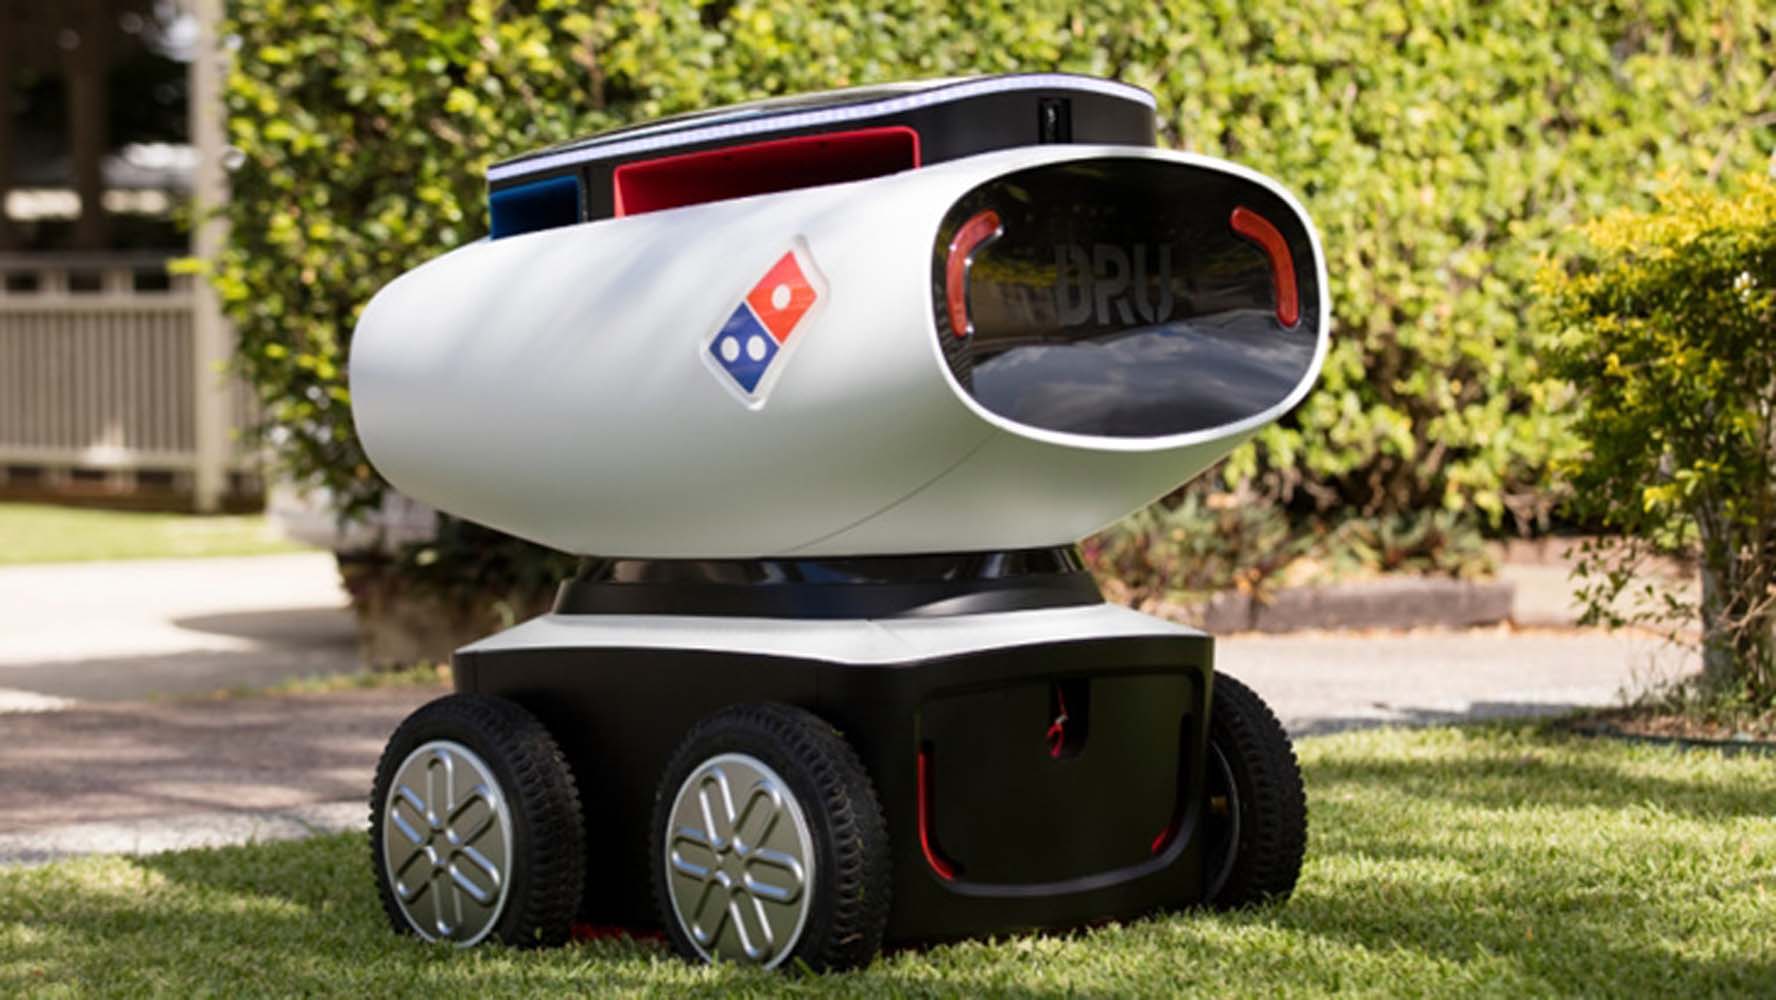 Domino's Pizza ve Nuro, robotik araçlarla pizza teslimatına başlayacak